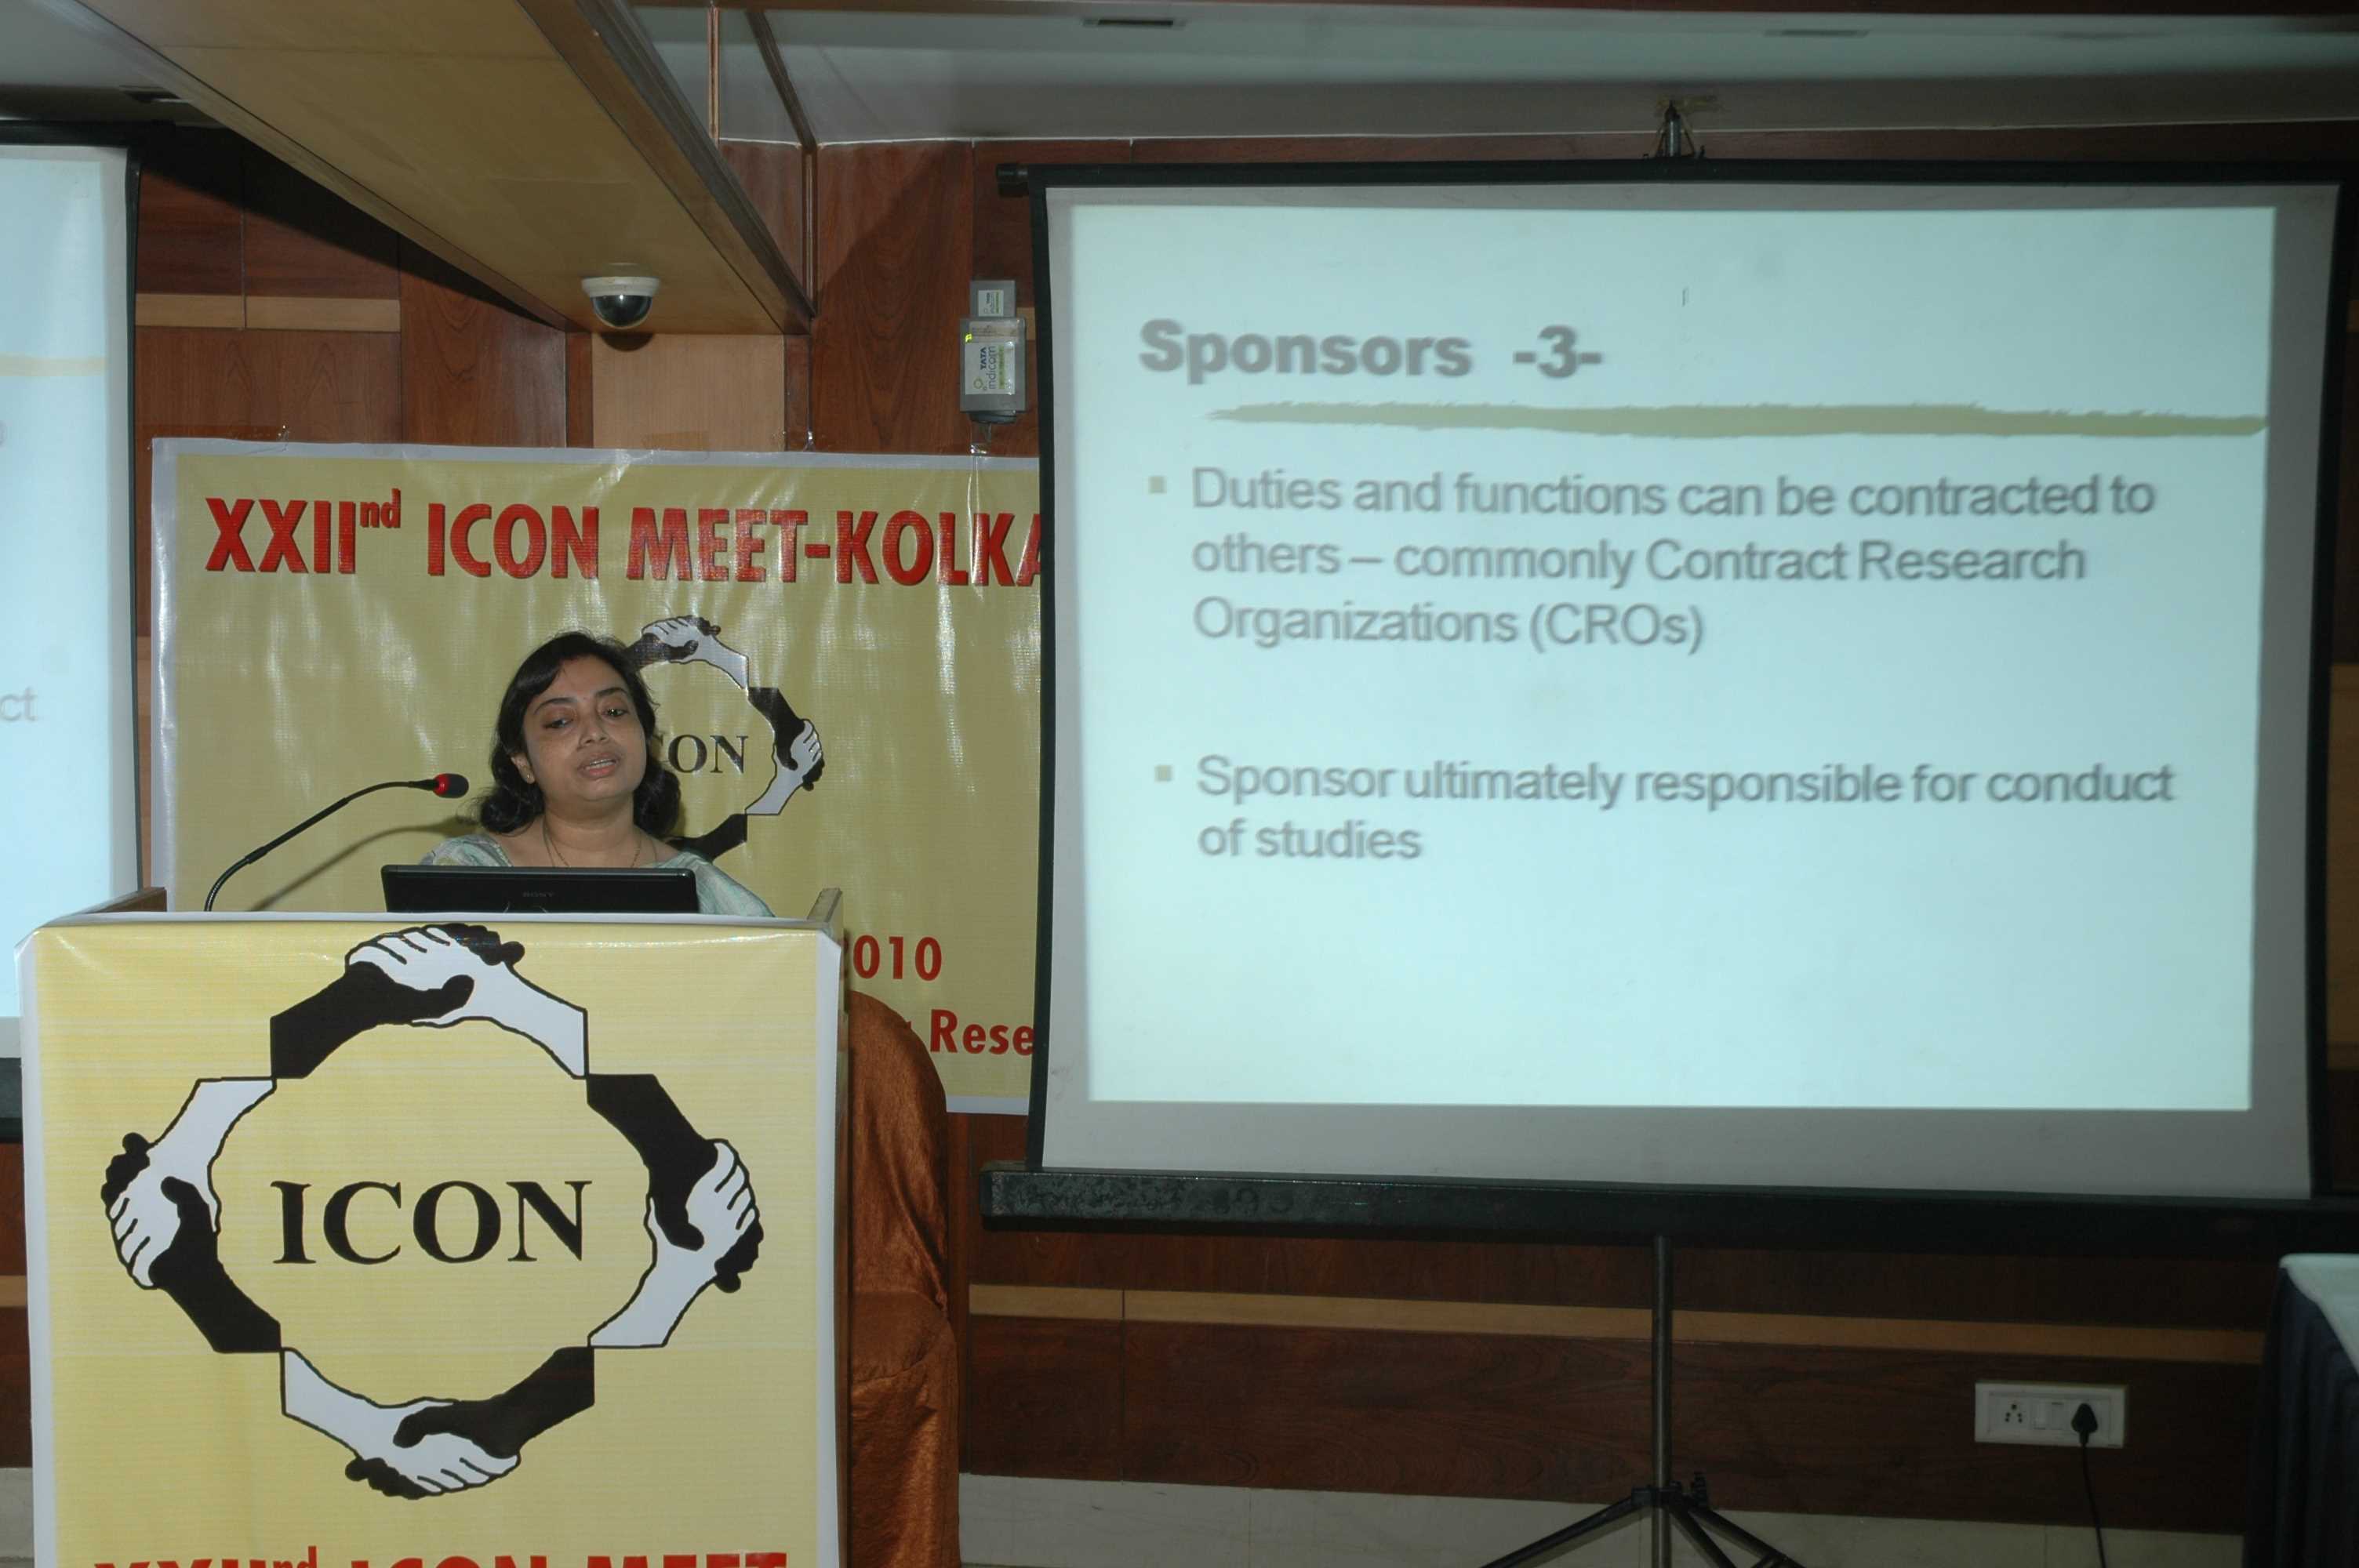 22nd ICON Meet Kolkata